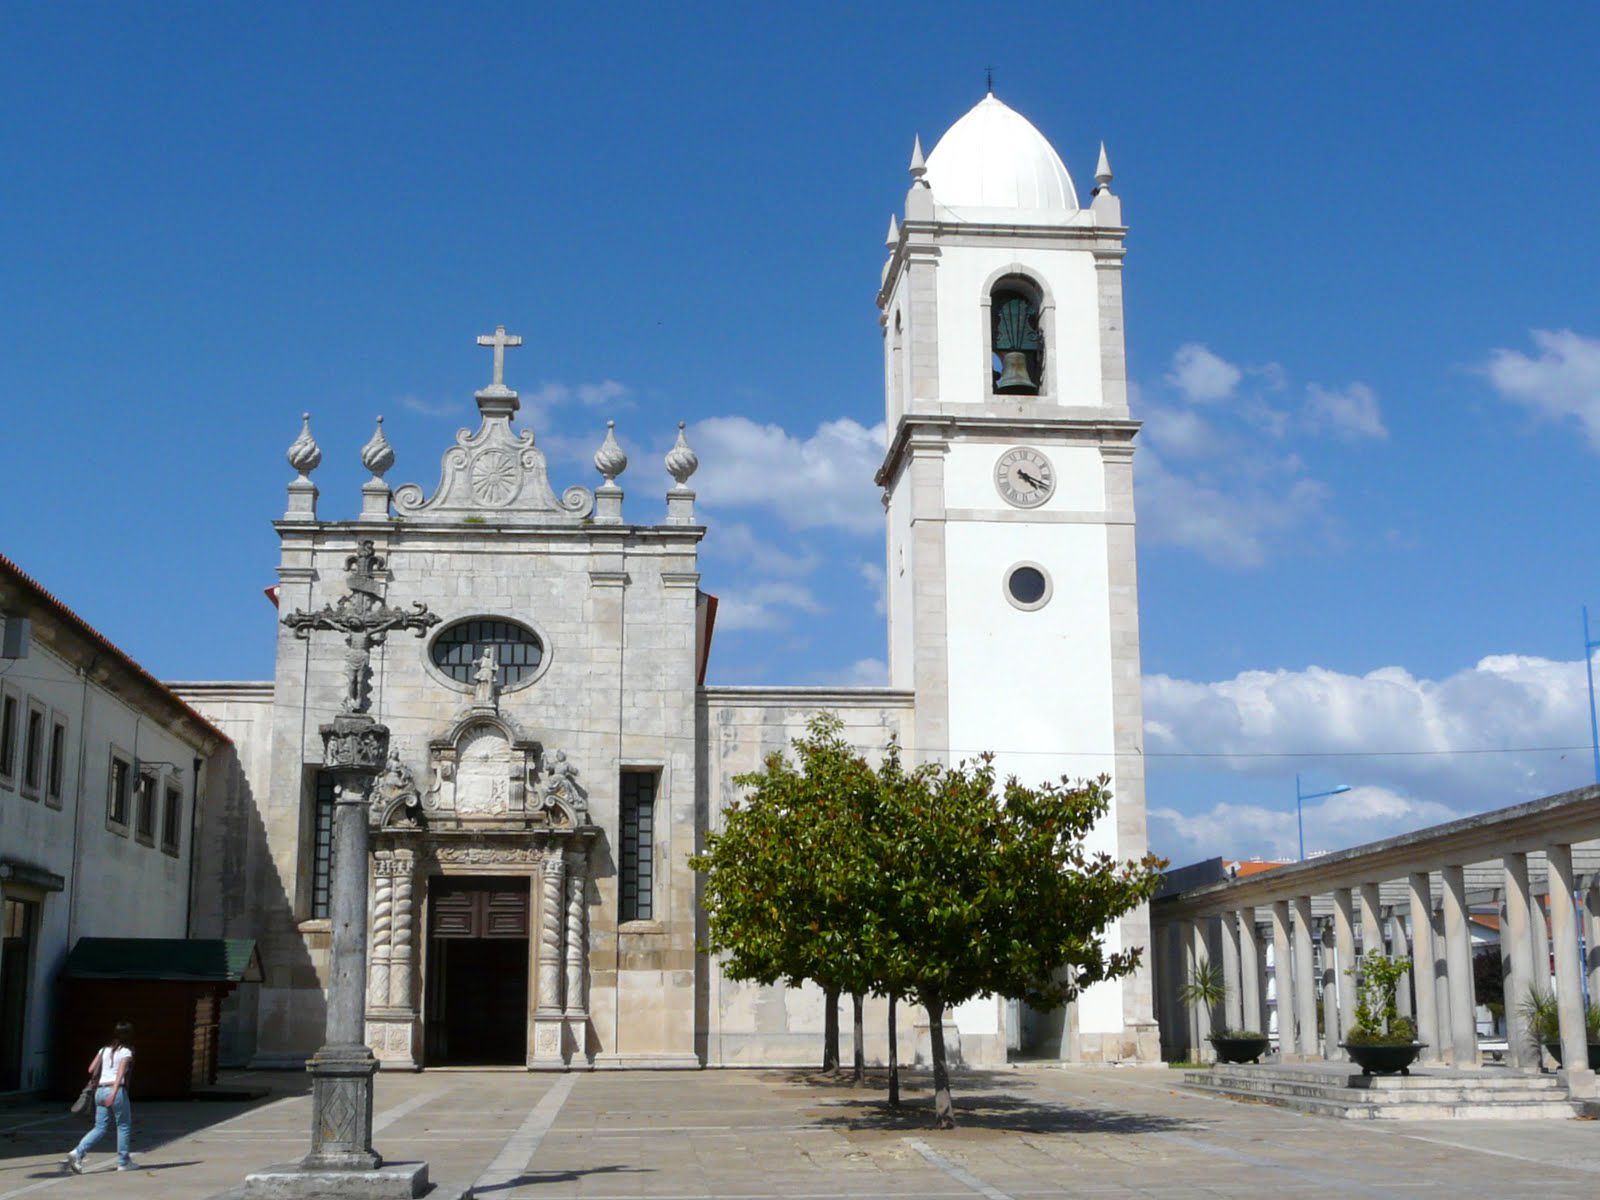  Кафедральный собор Авейру - Авейру, Португалия фото #32869